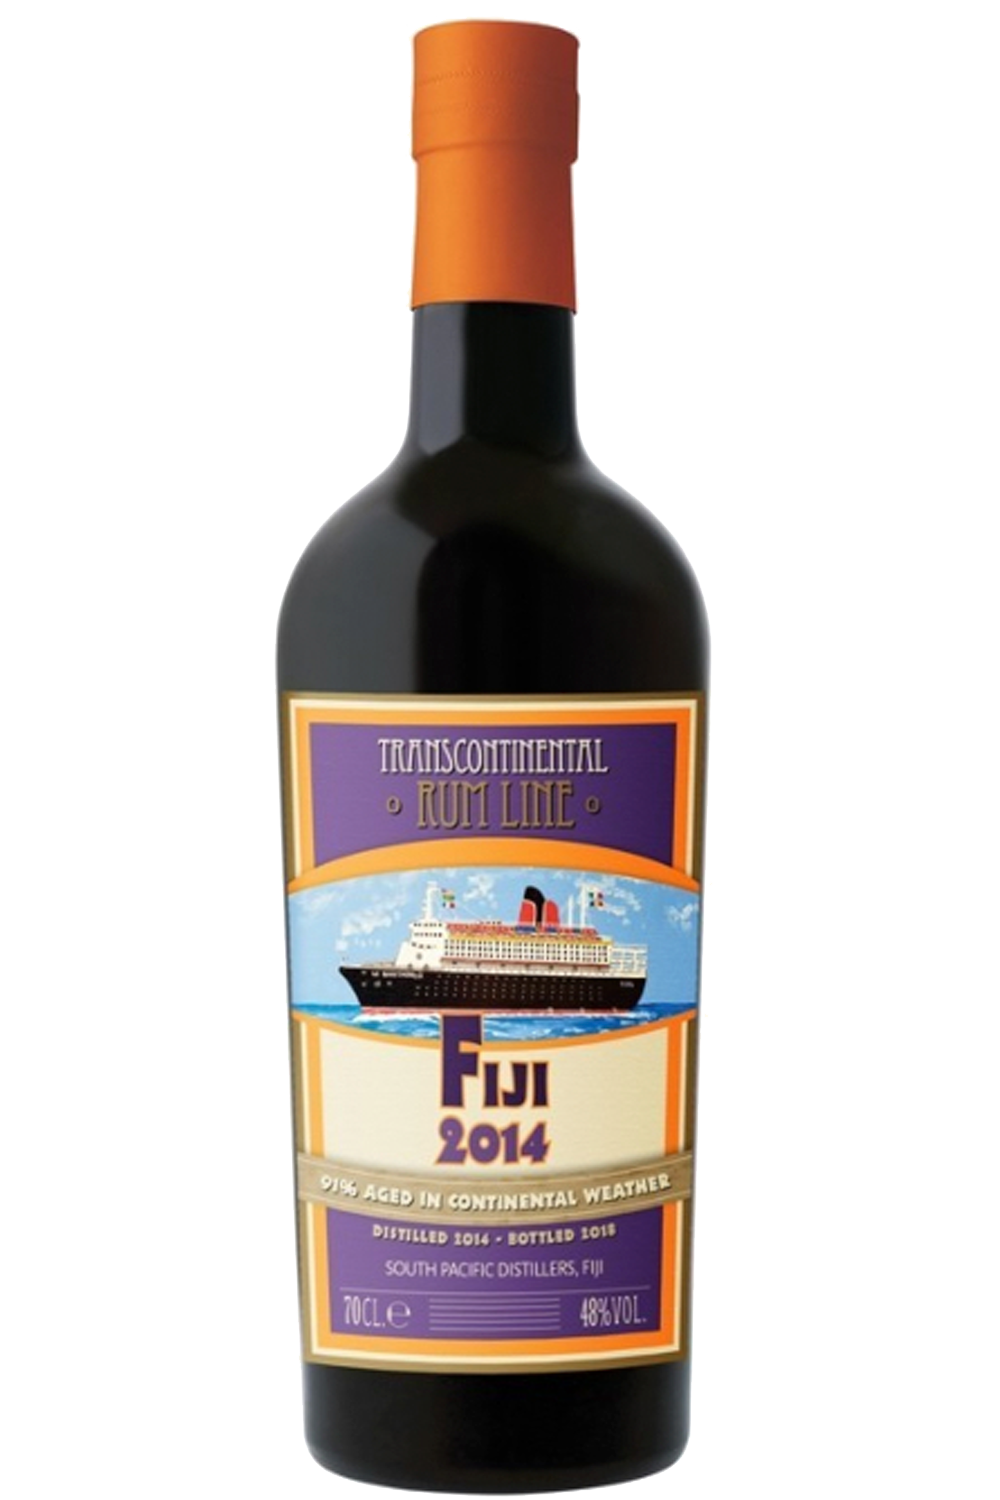 WineVins TCRL Fiji 2014